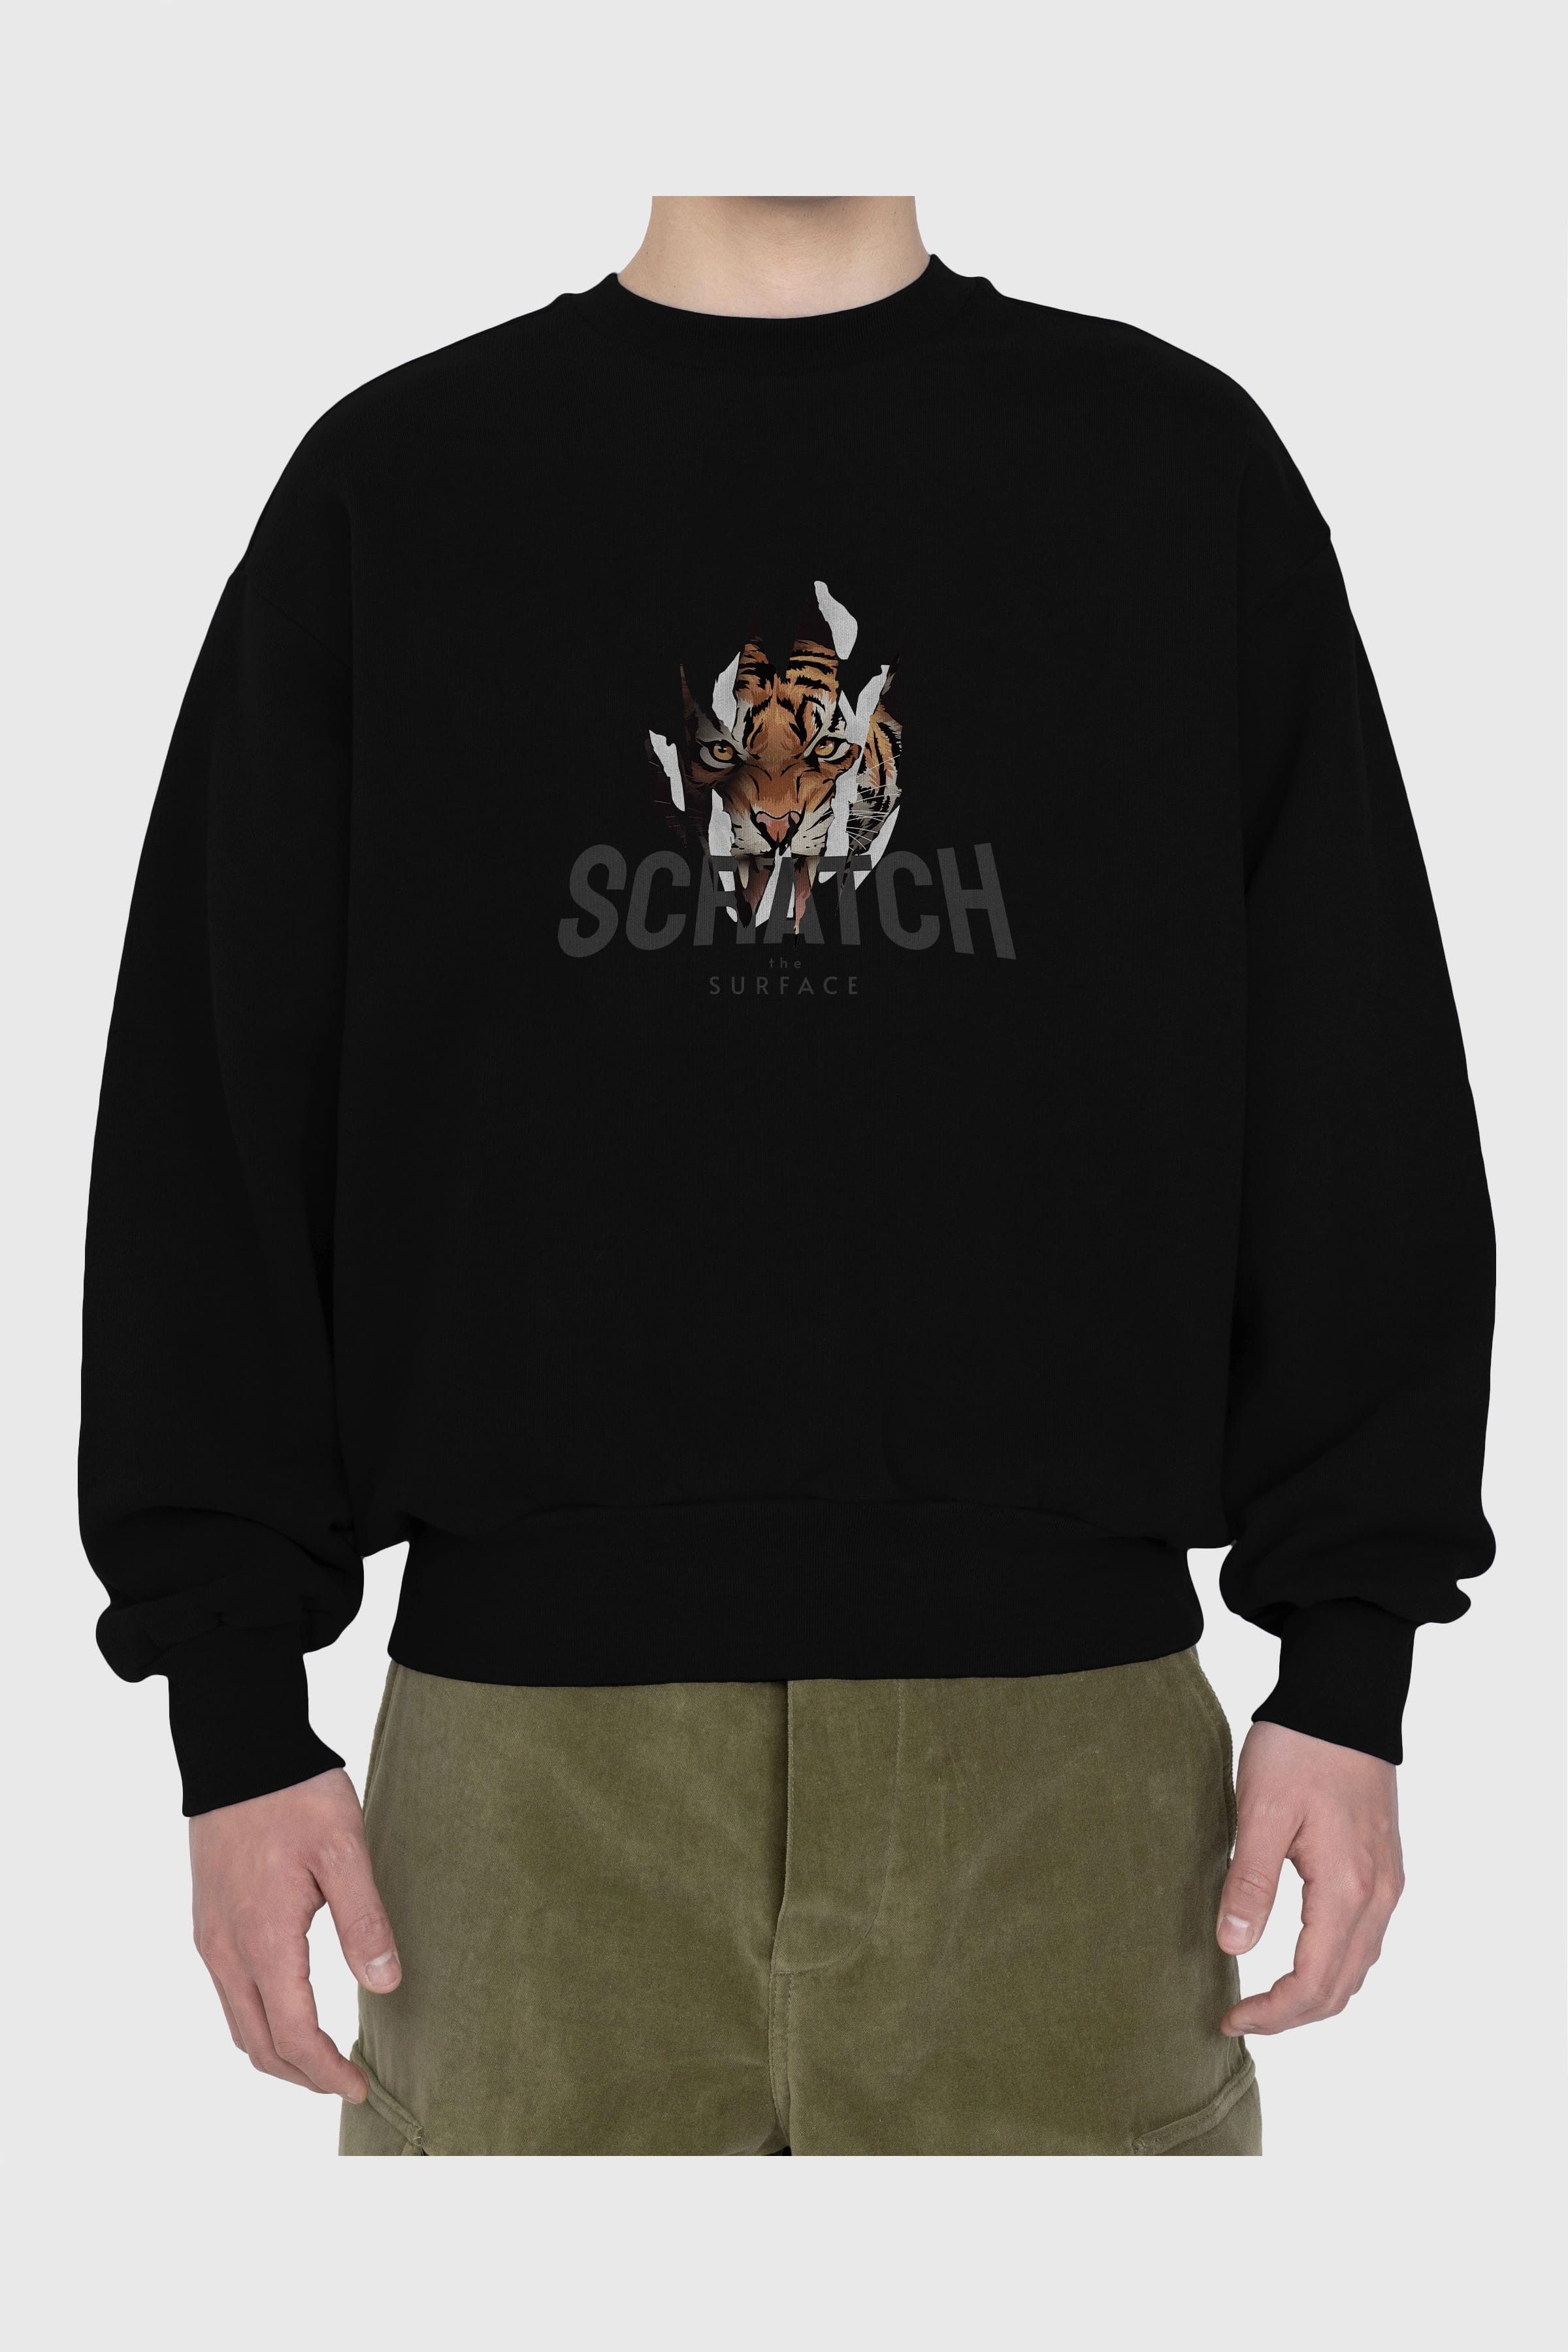 Teddy Bear Scratch Ön Baskılı Oversize Sweatshirt Erkek Kadın Unisex